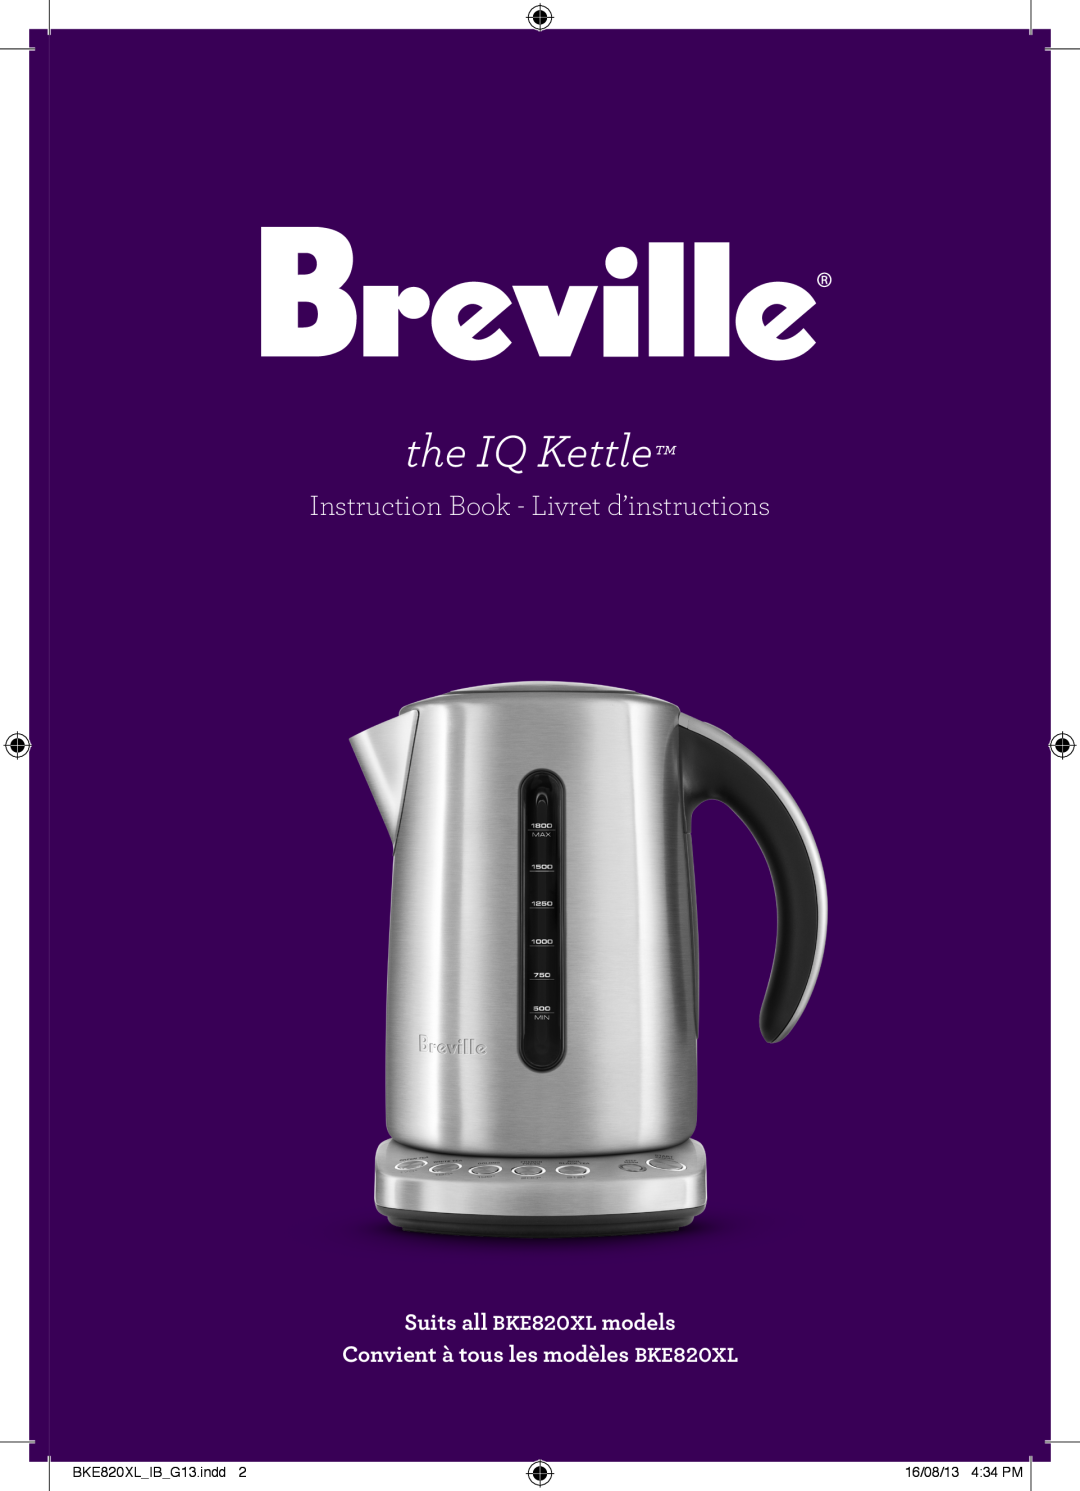 Breville the IQ Kettle manual Suits all BKE820XL models Convient à tous les modèles BKE820XL, BKE820XLIBG13.indd 